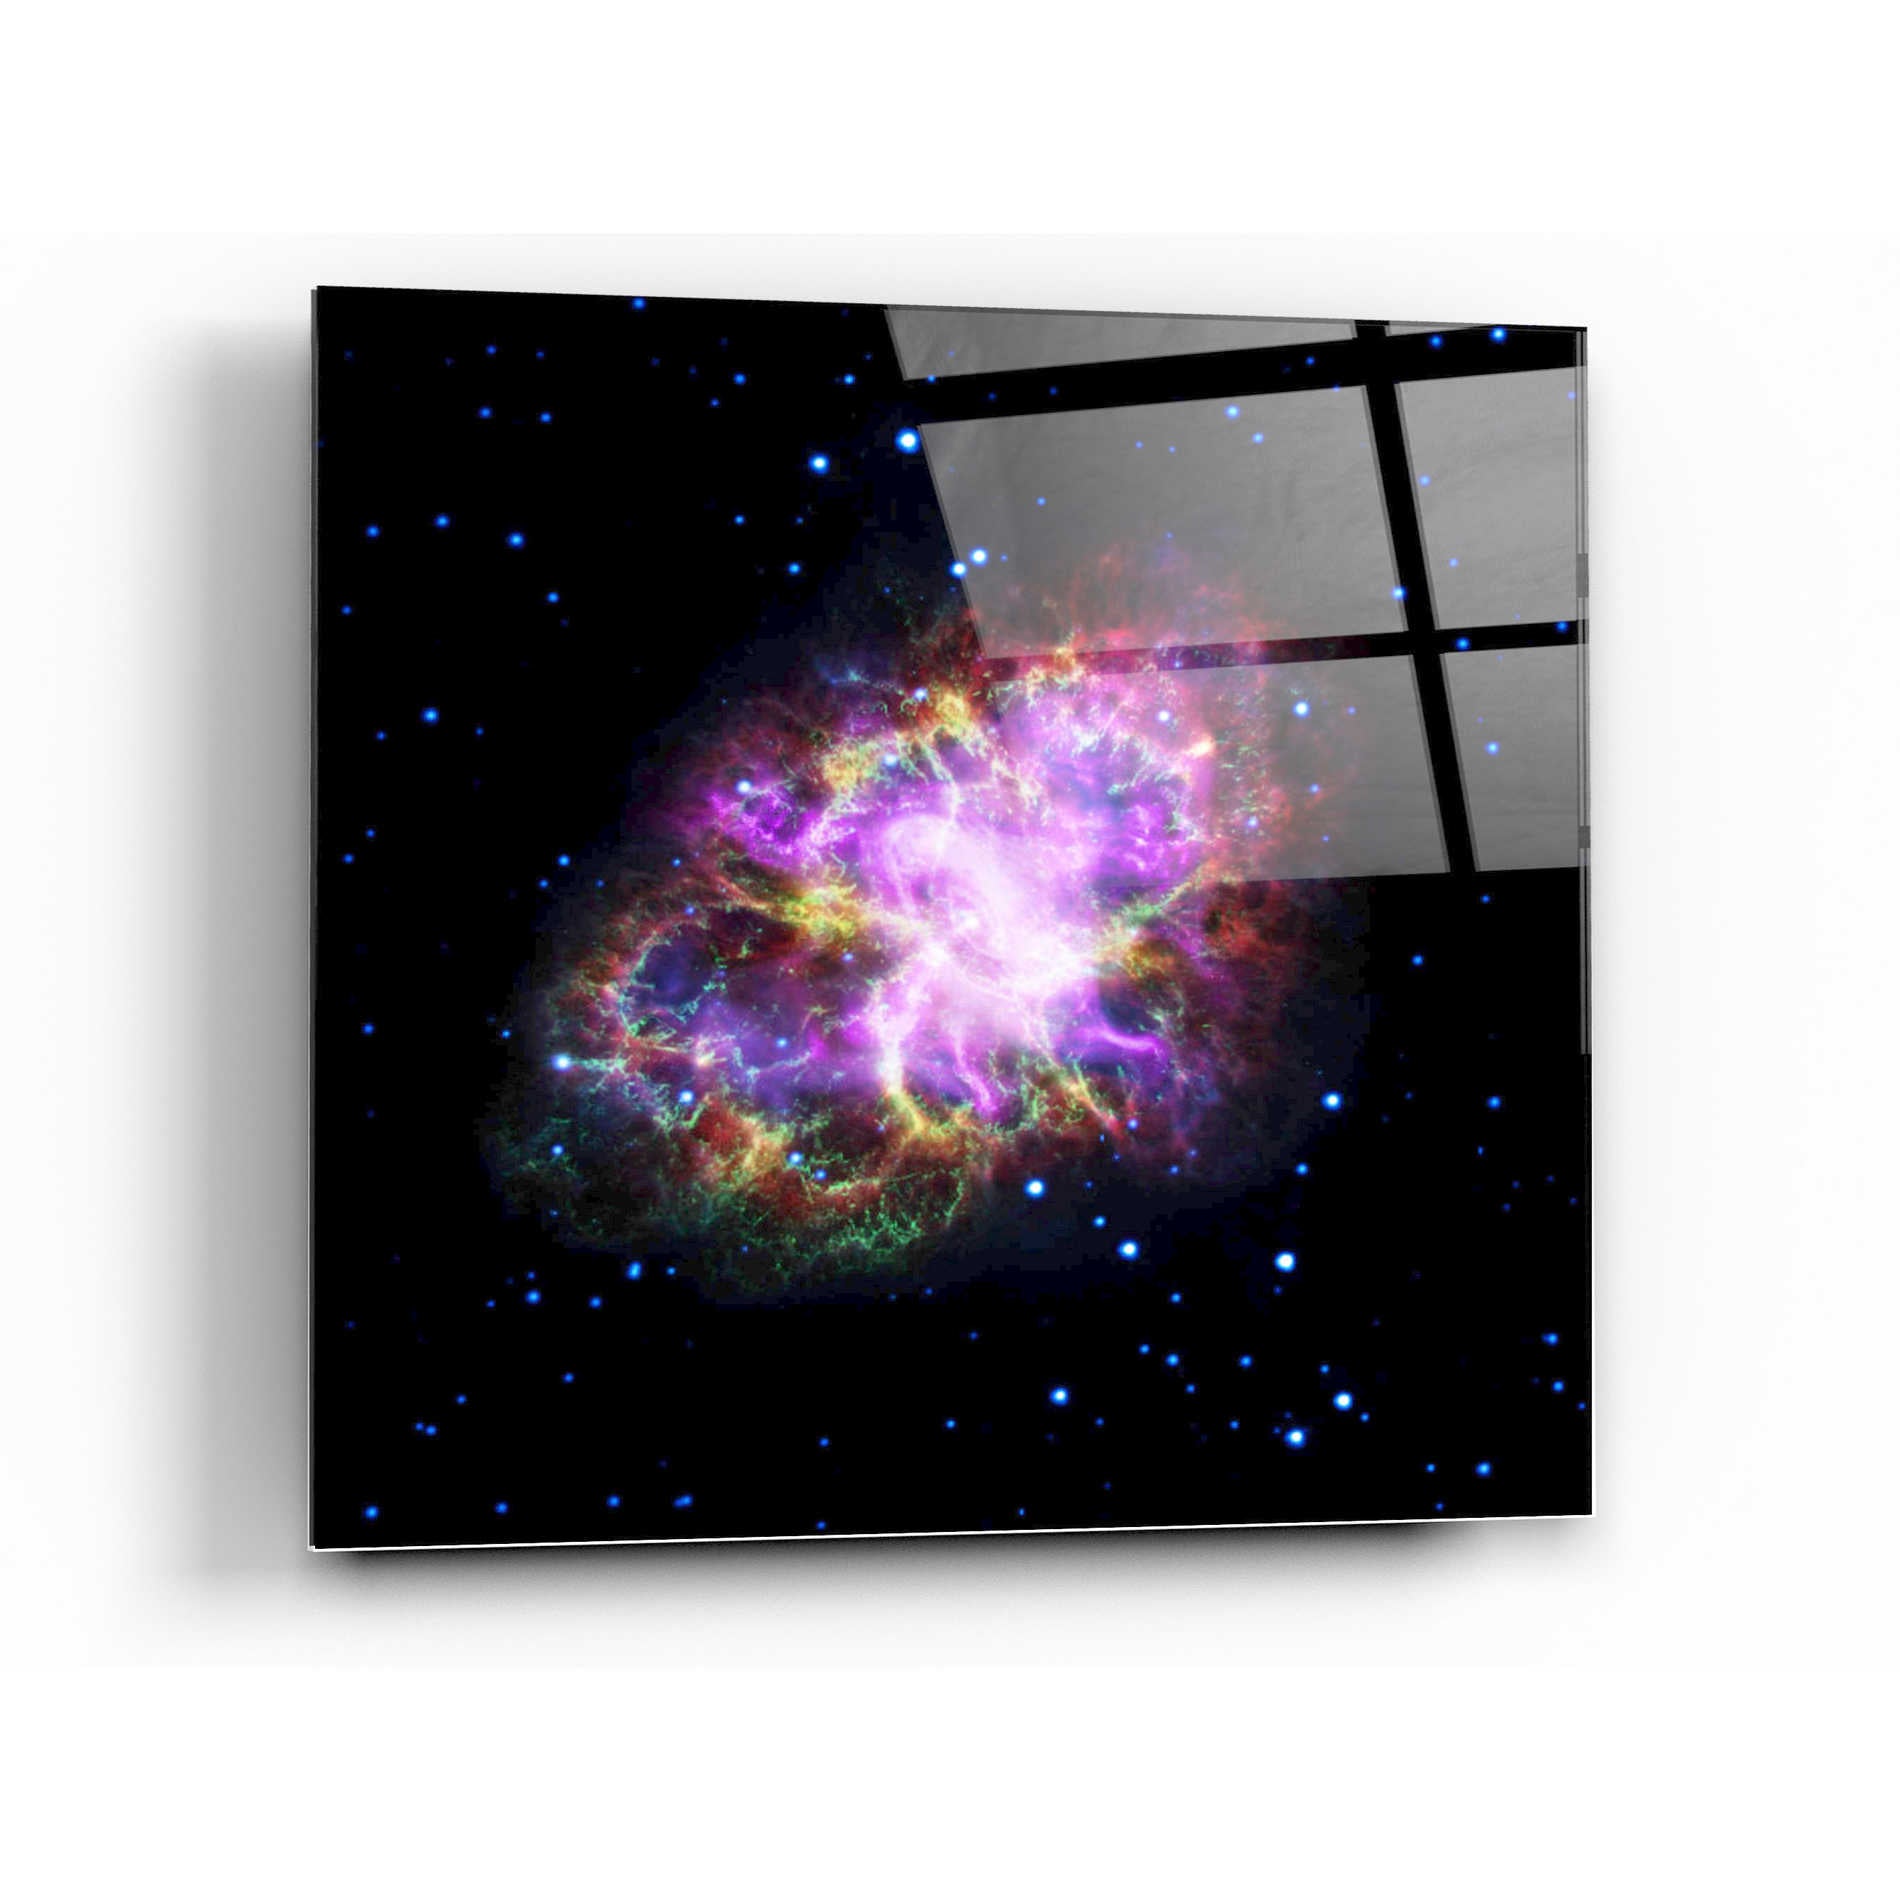 Epic Art "Crab Nebula Multi-Wavelengths" Hubble Space Telescope Acrylic Glass Wall Art,36x36